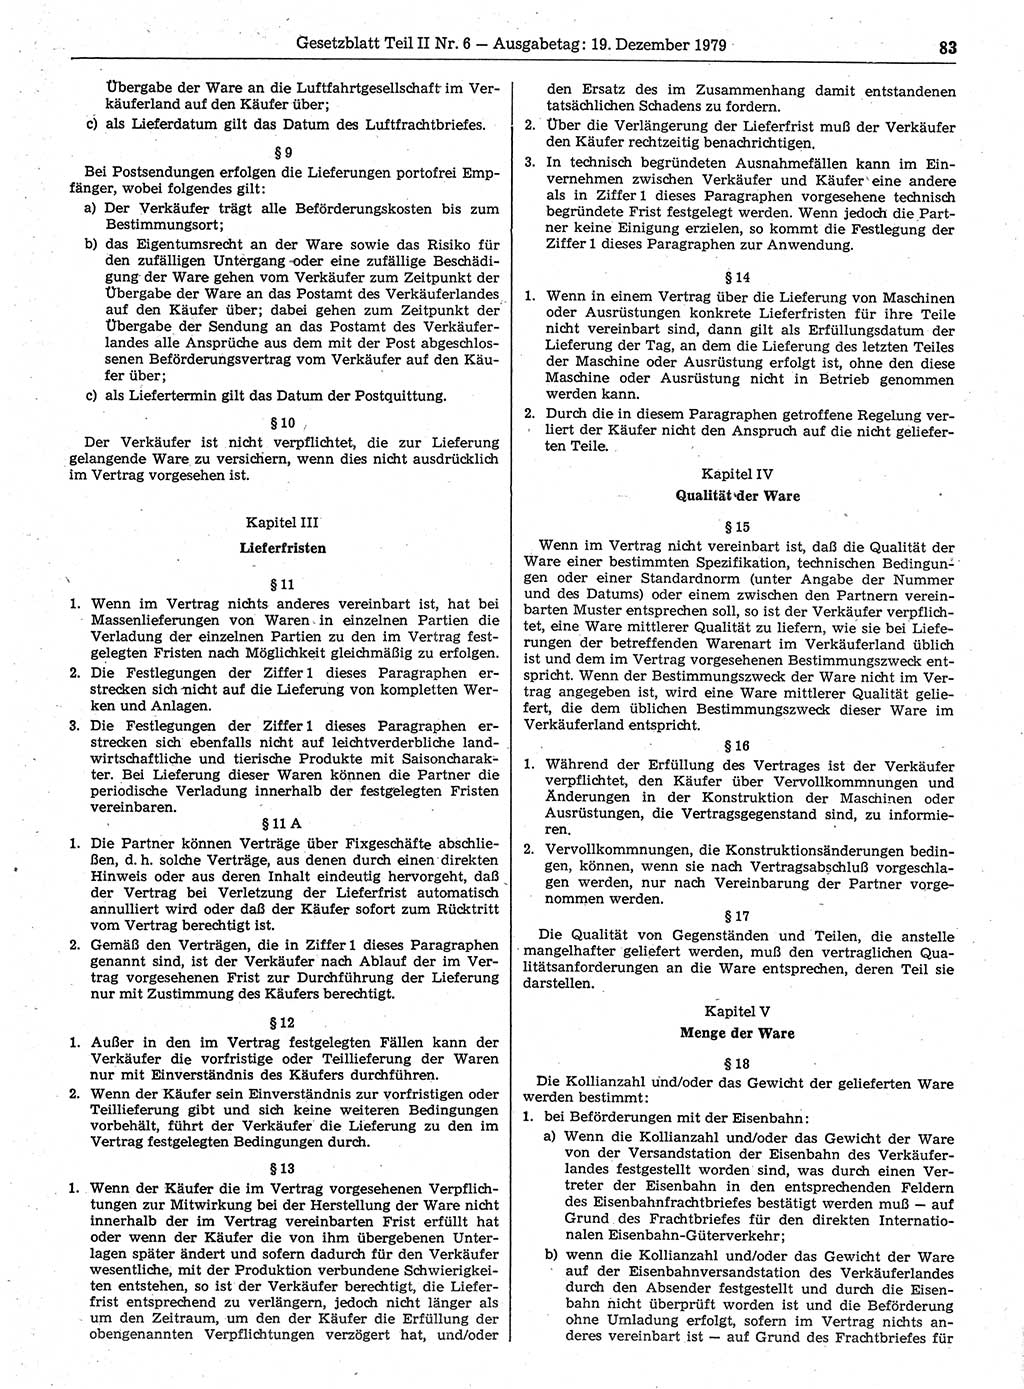 Gesetzblatt (GBl.) der Deutschen Demokratischen Republik (DDR) Teil ⅠⅠ 1979, Seite 83 (GBl. DDR ⅠⅠ 1979, S. 83)